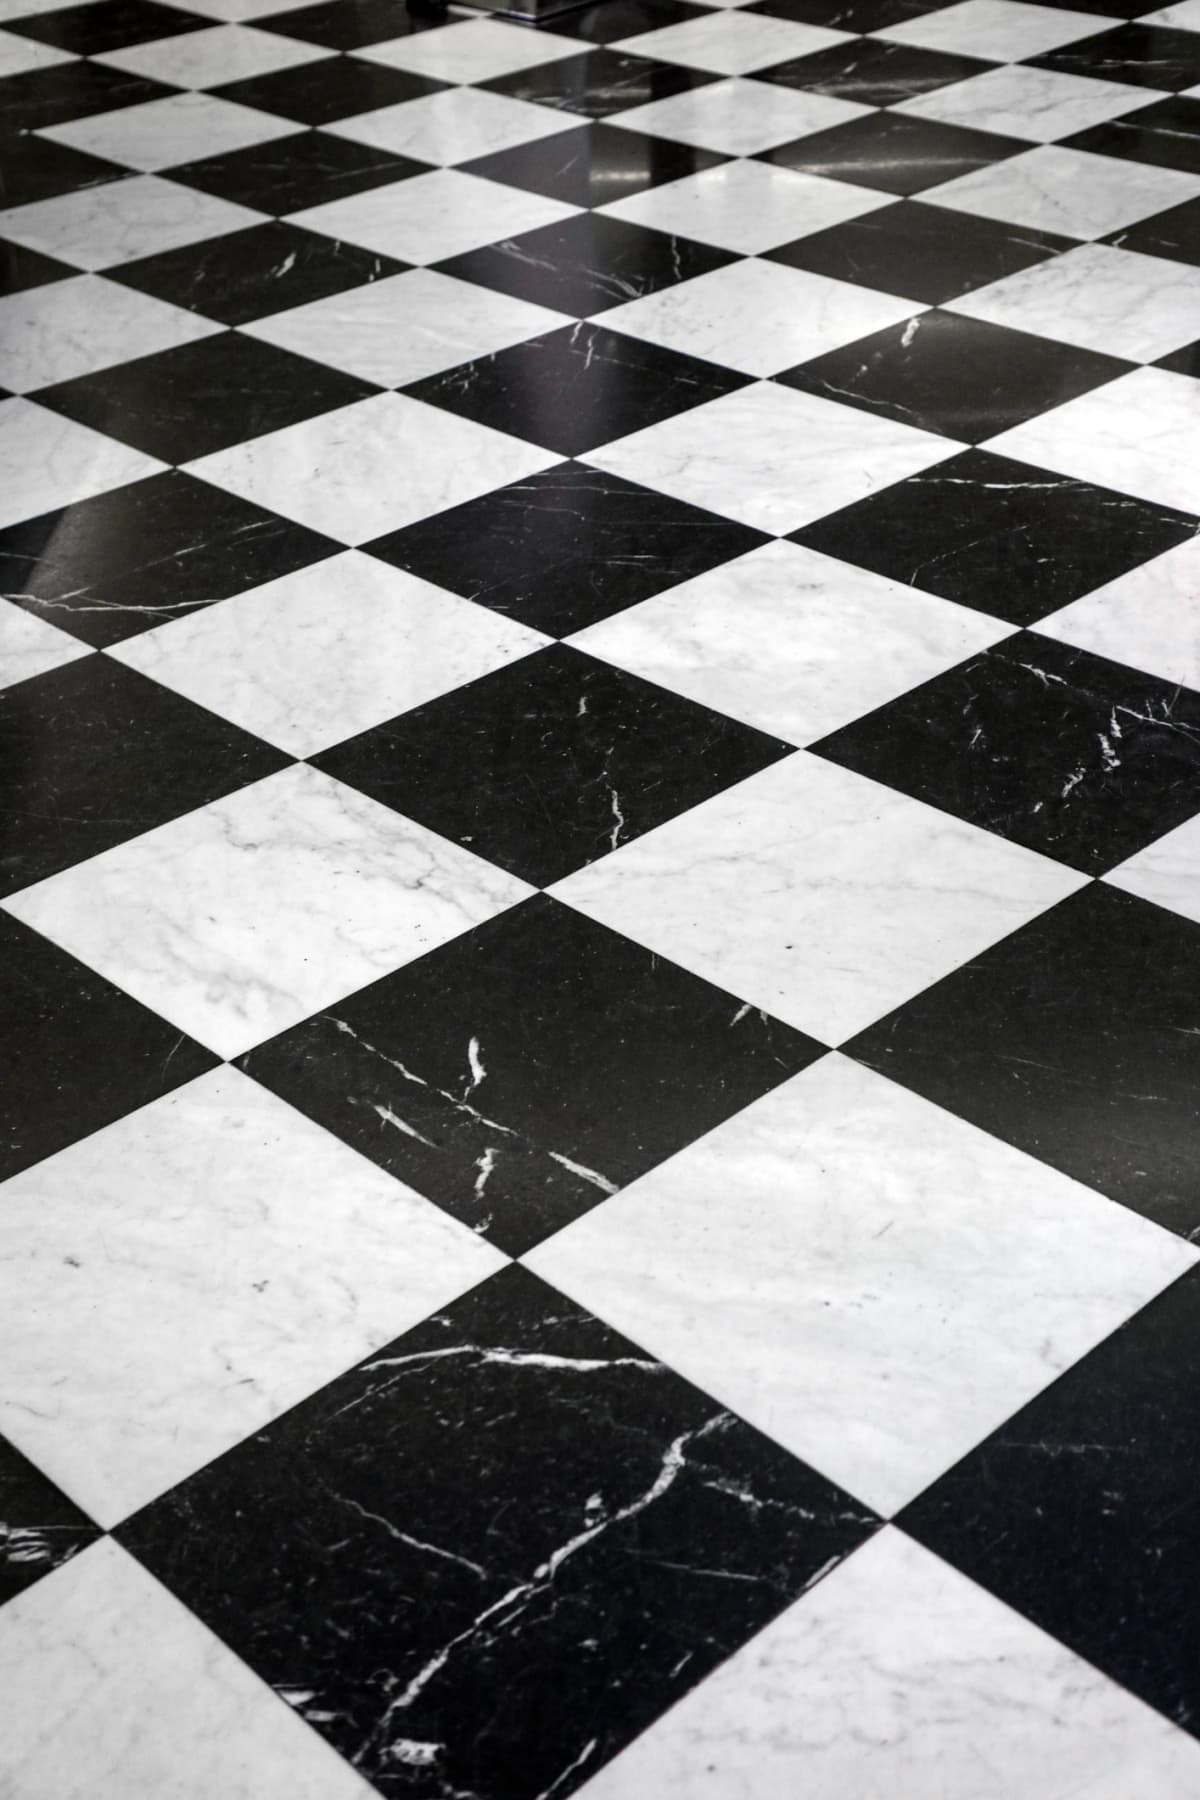 Black and White tiled floor